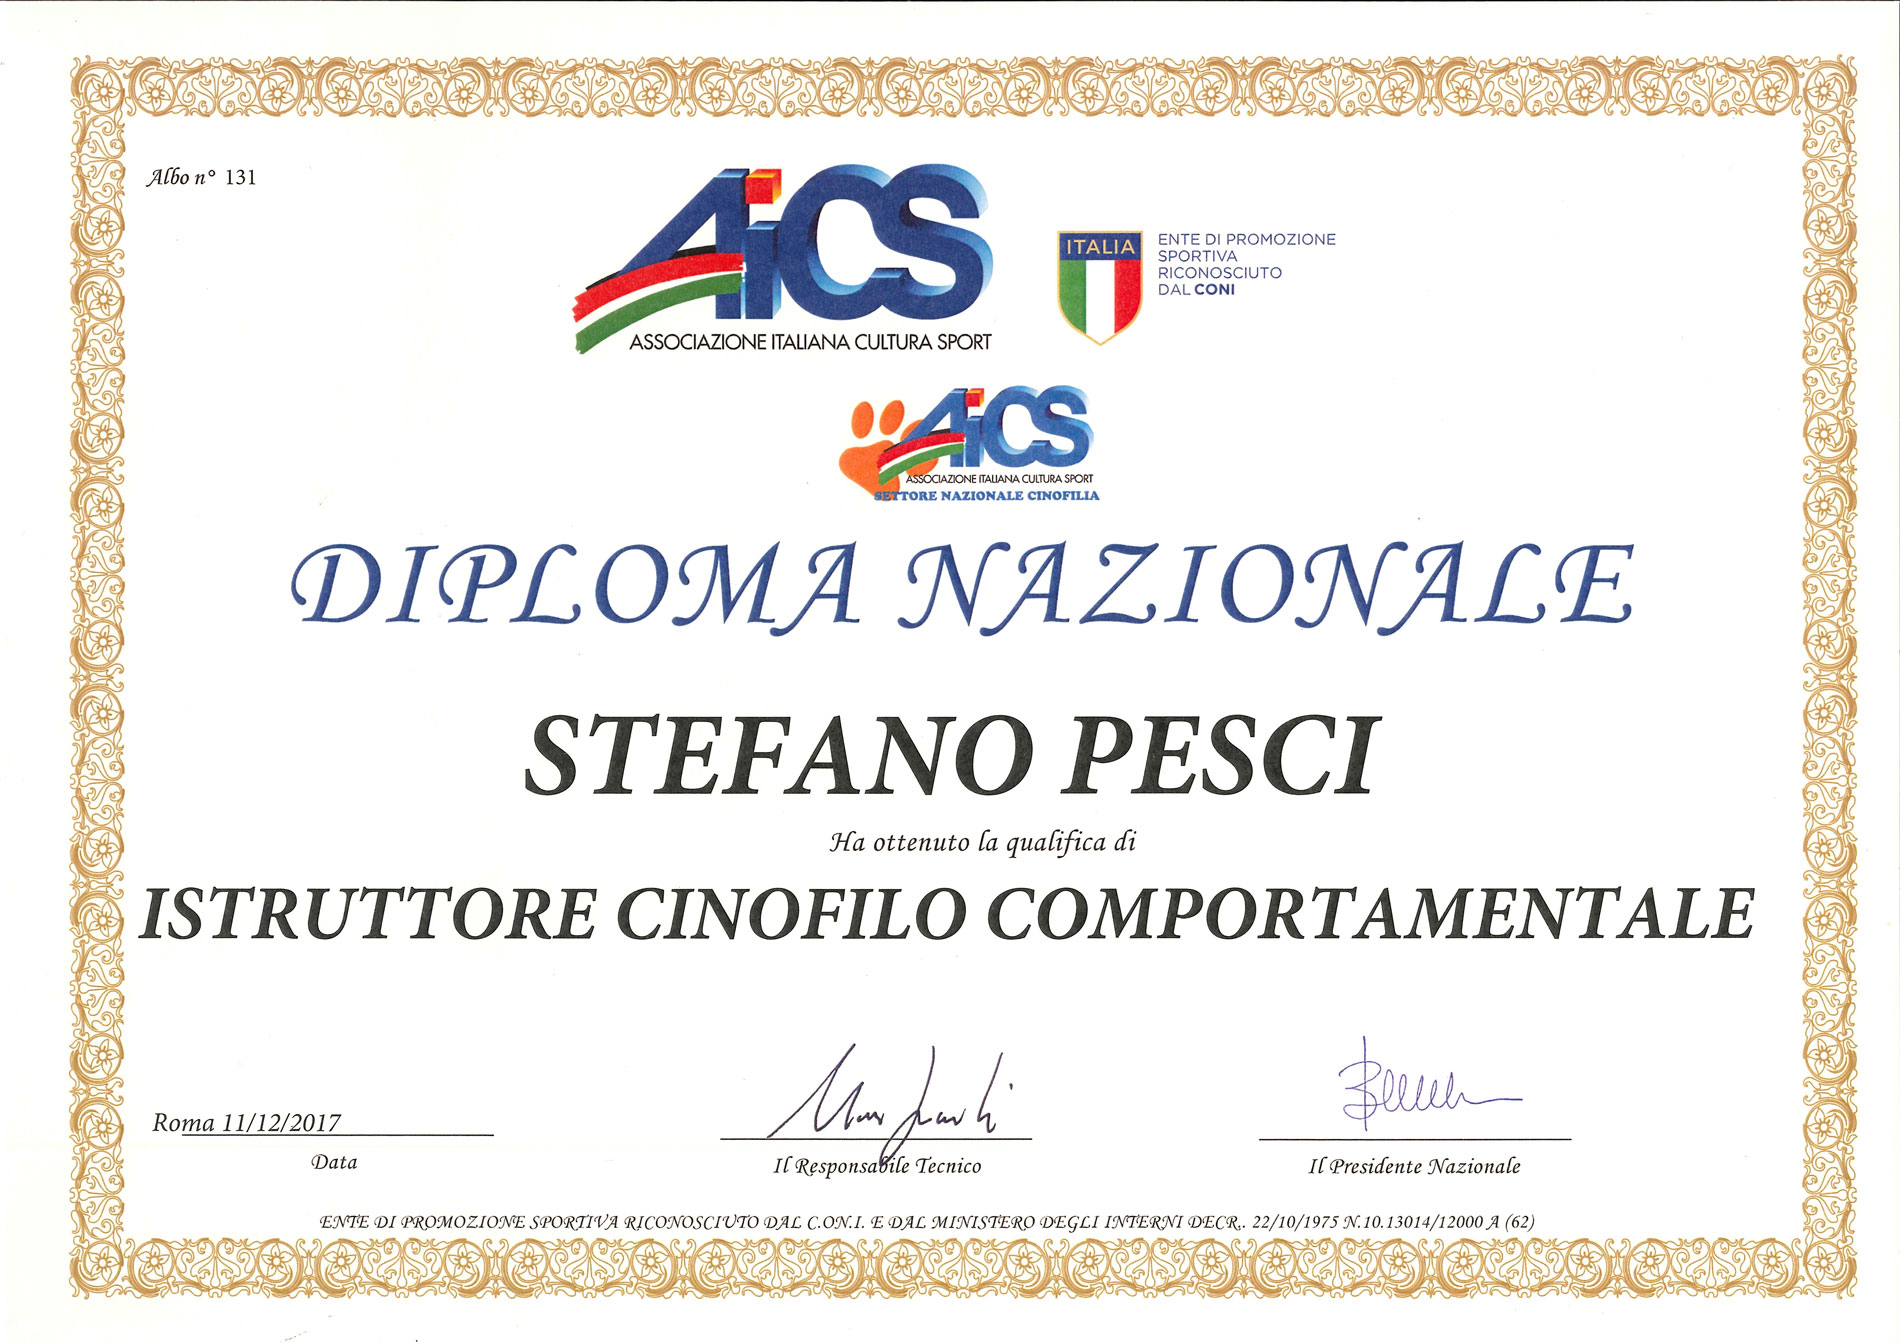 \isytruttore Cinofilo Comportamentale - Stefano Pesci